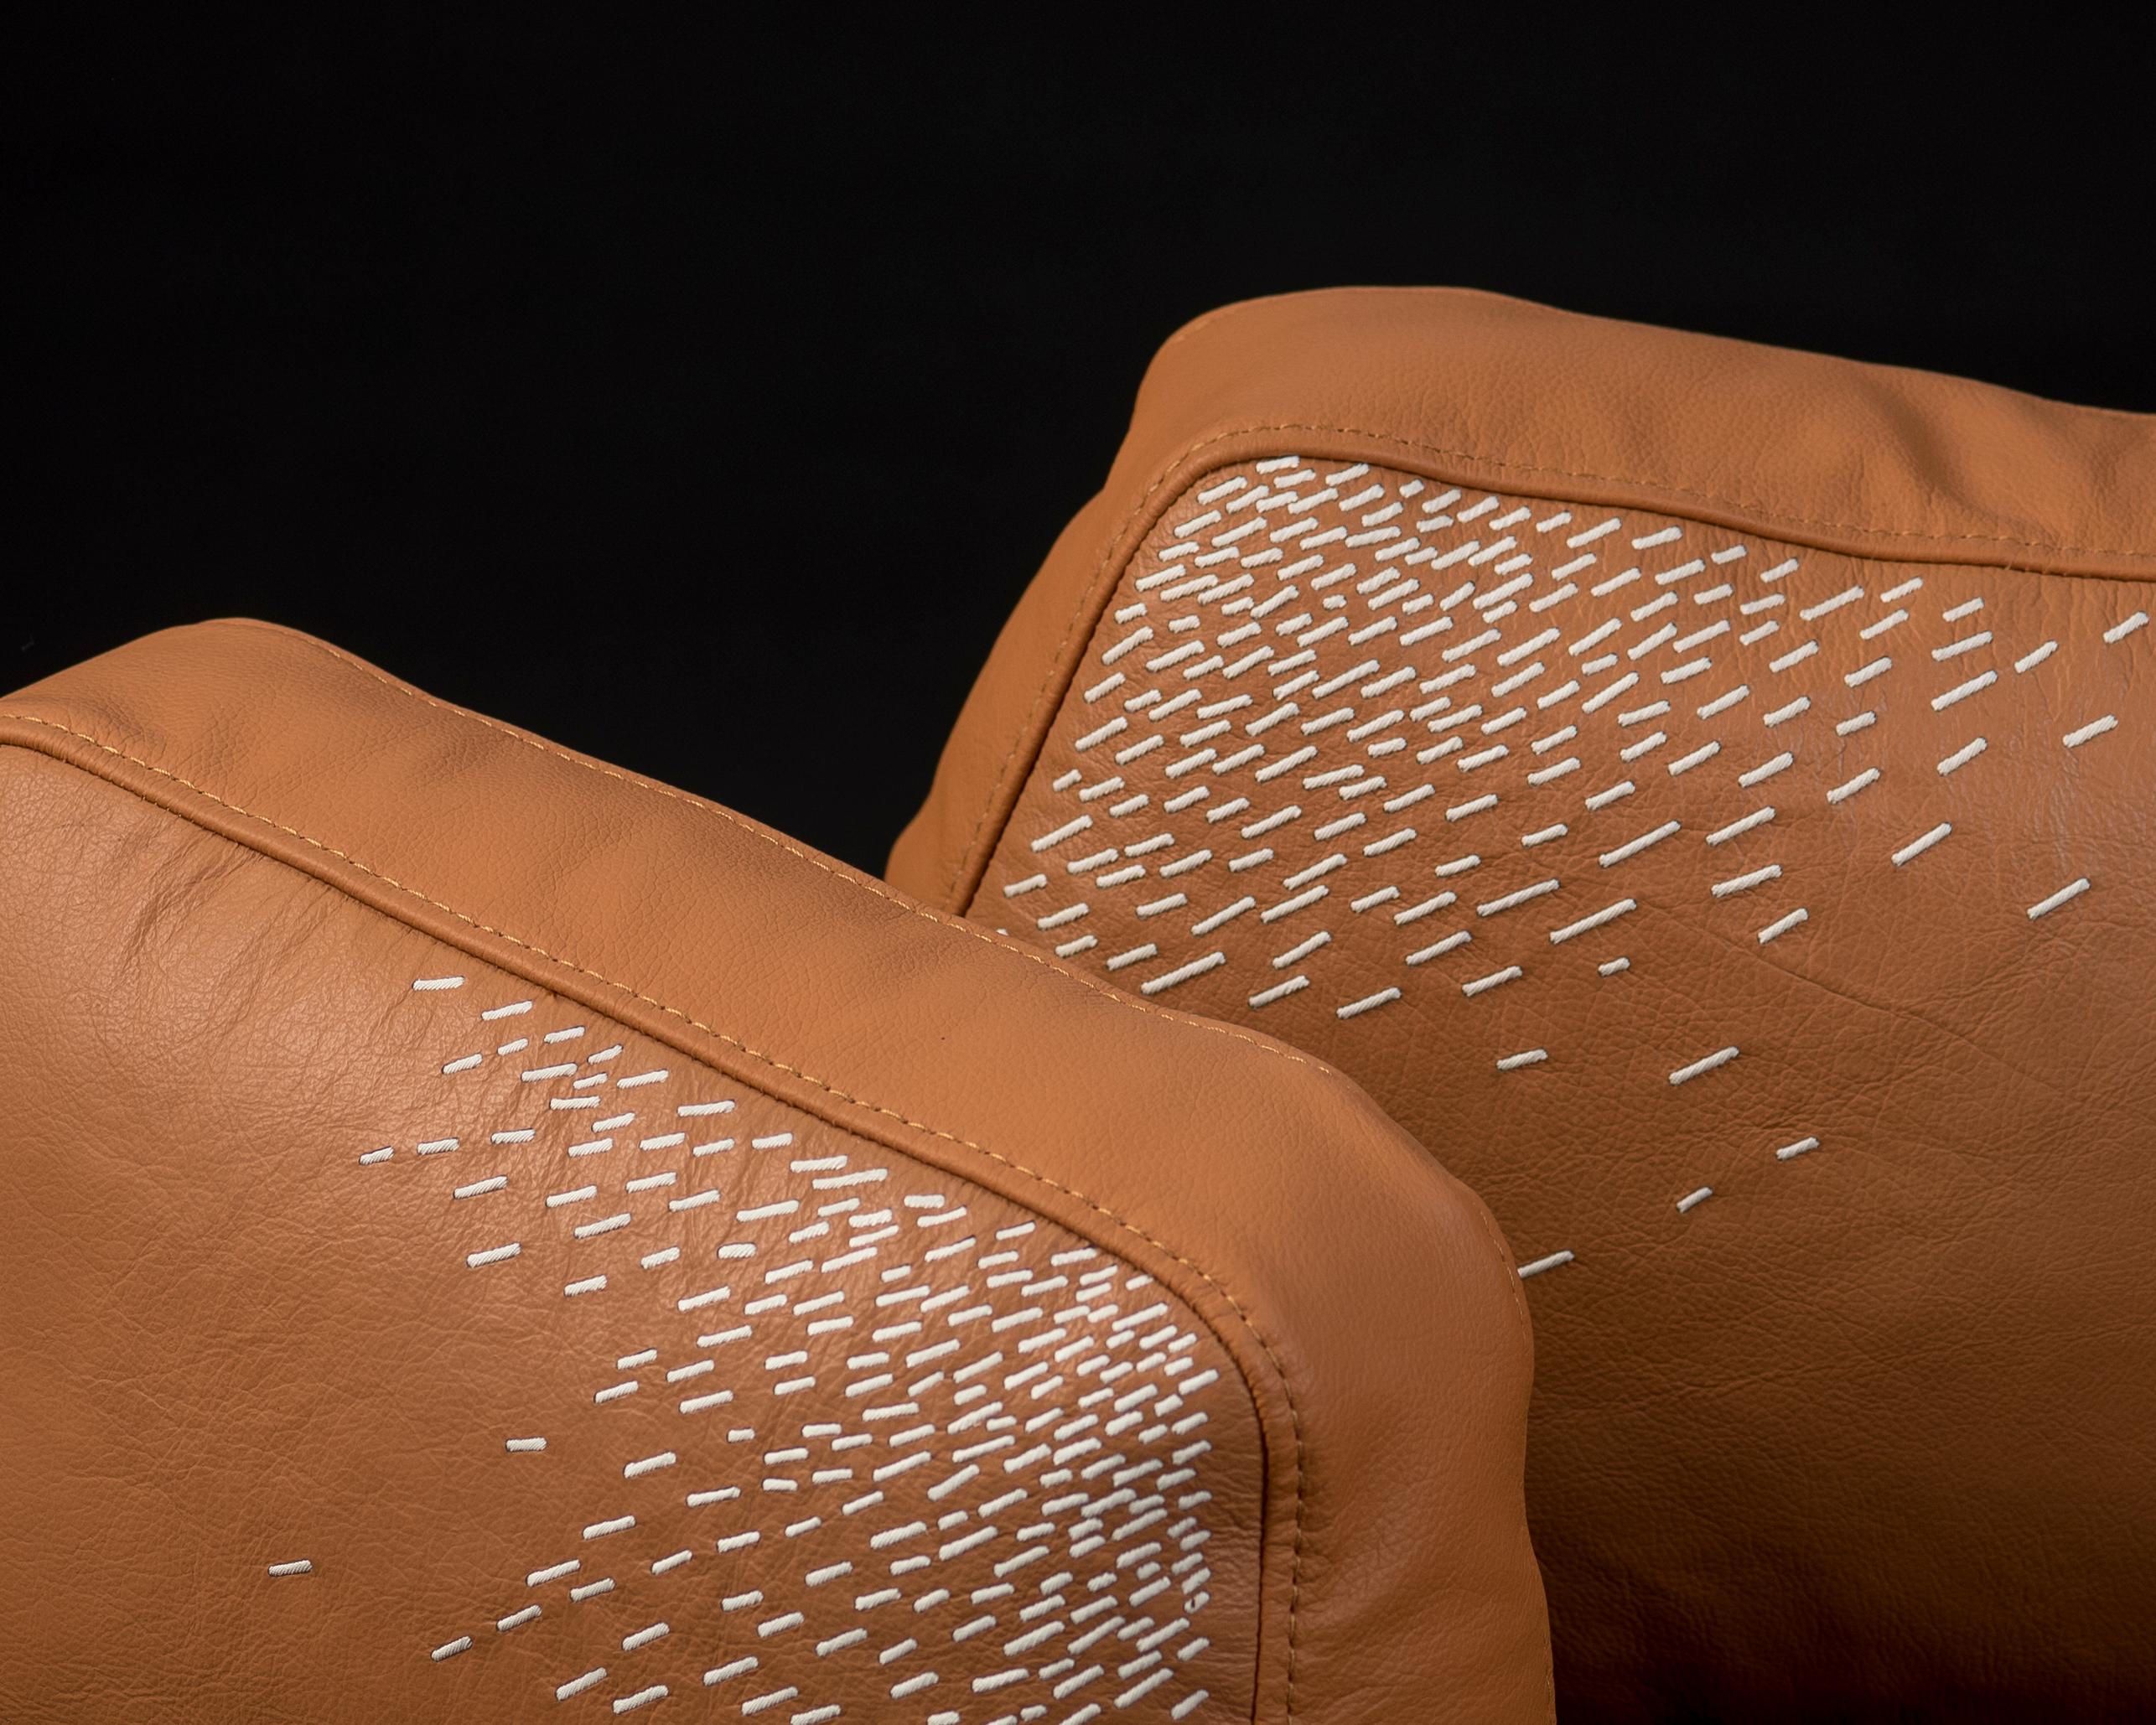 Le Piteado est l'incarnation de l'artisanat de Jalisco : chaque point de couture de la fibre de maguey sur le cuir teinté porte en lui des siècles de tradition. Les coussins Pita reflètent l'intemporalité de la technique, dont la broderie délicate